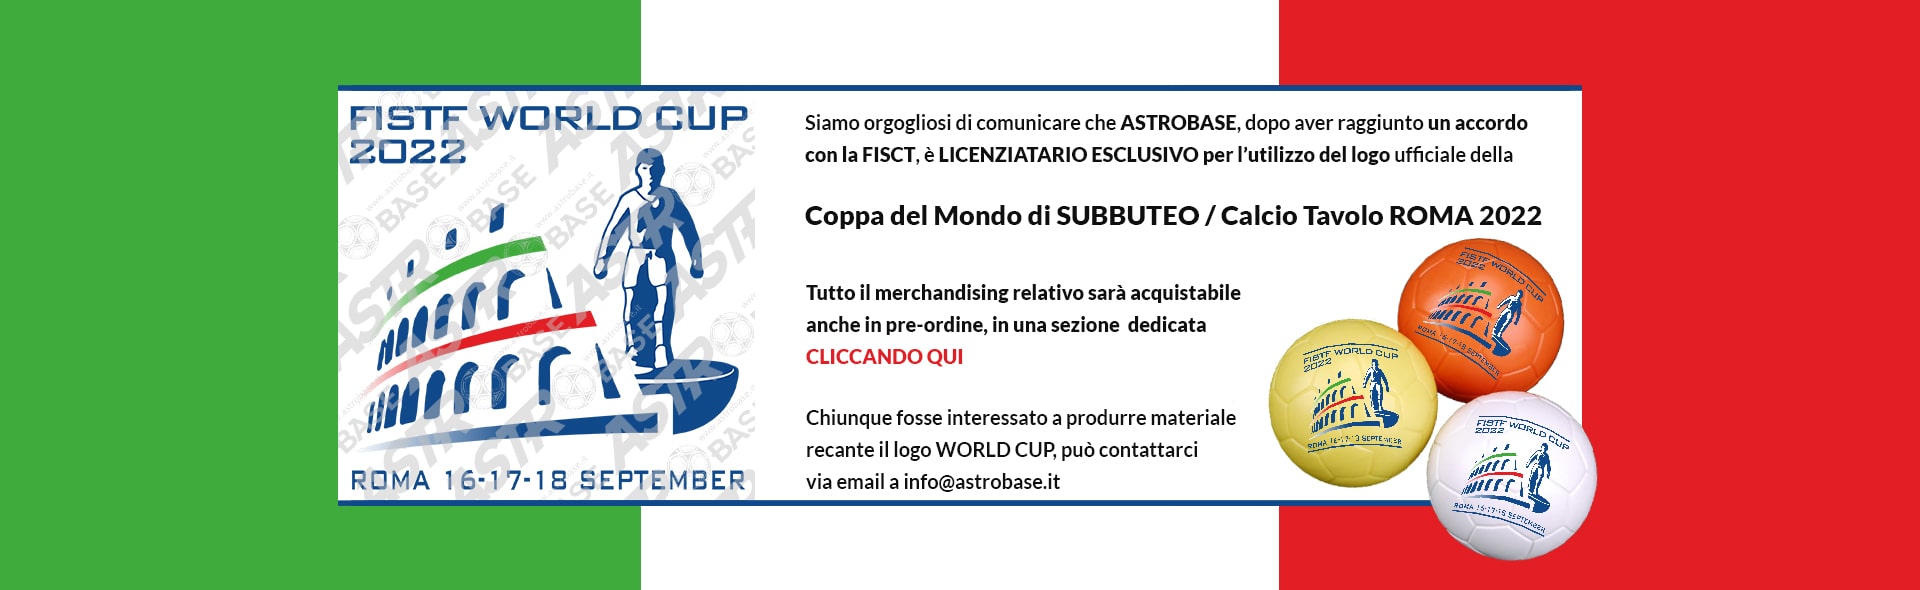 Astrobase - Slide Coppa del Mondo Roma 2022